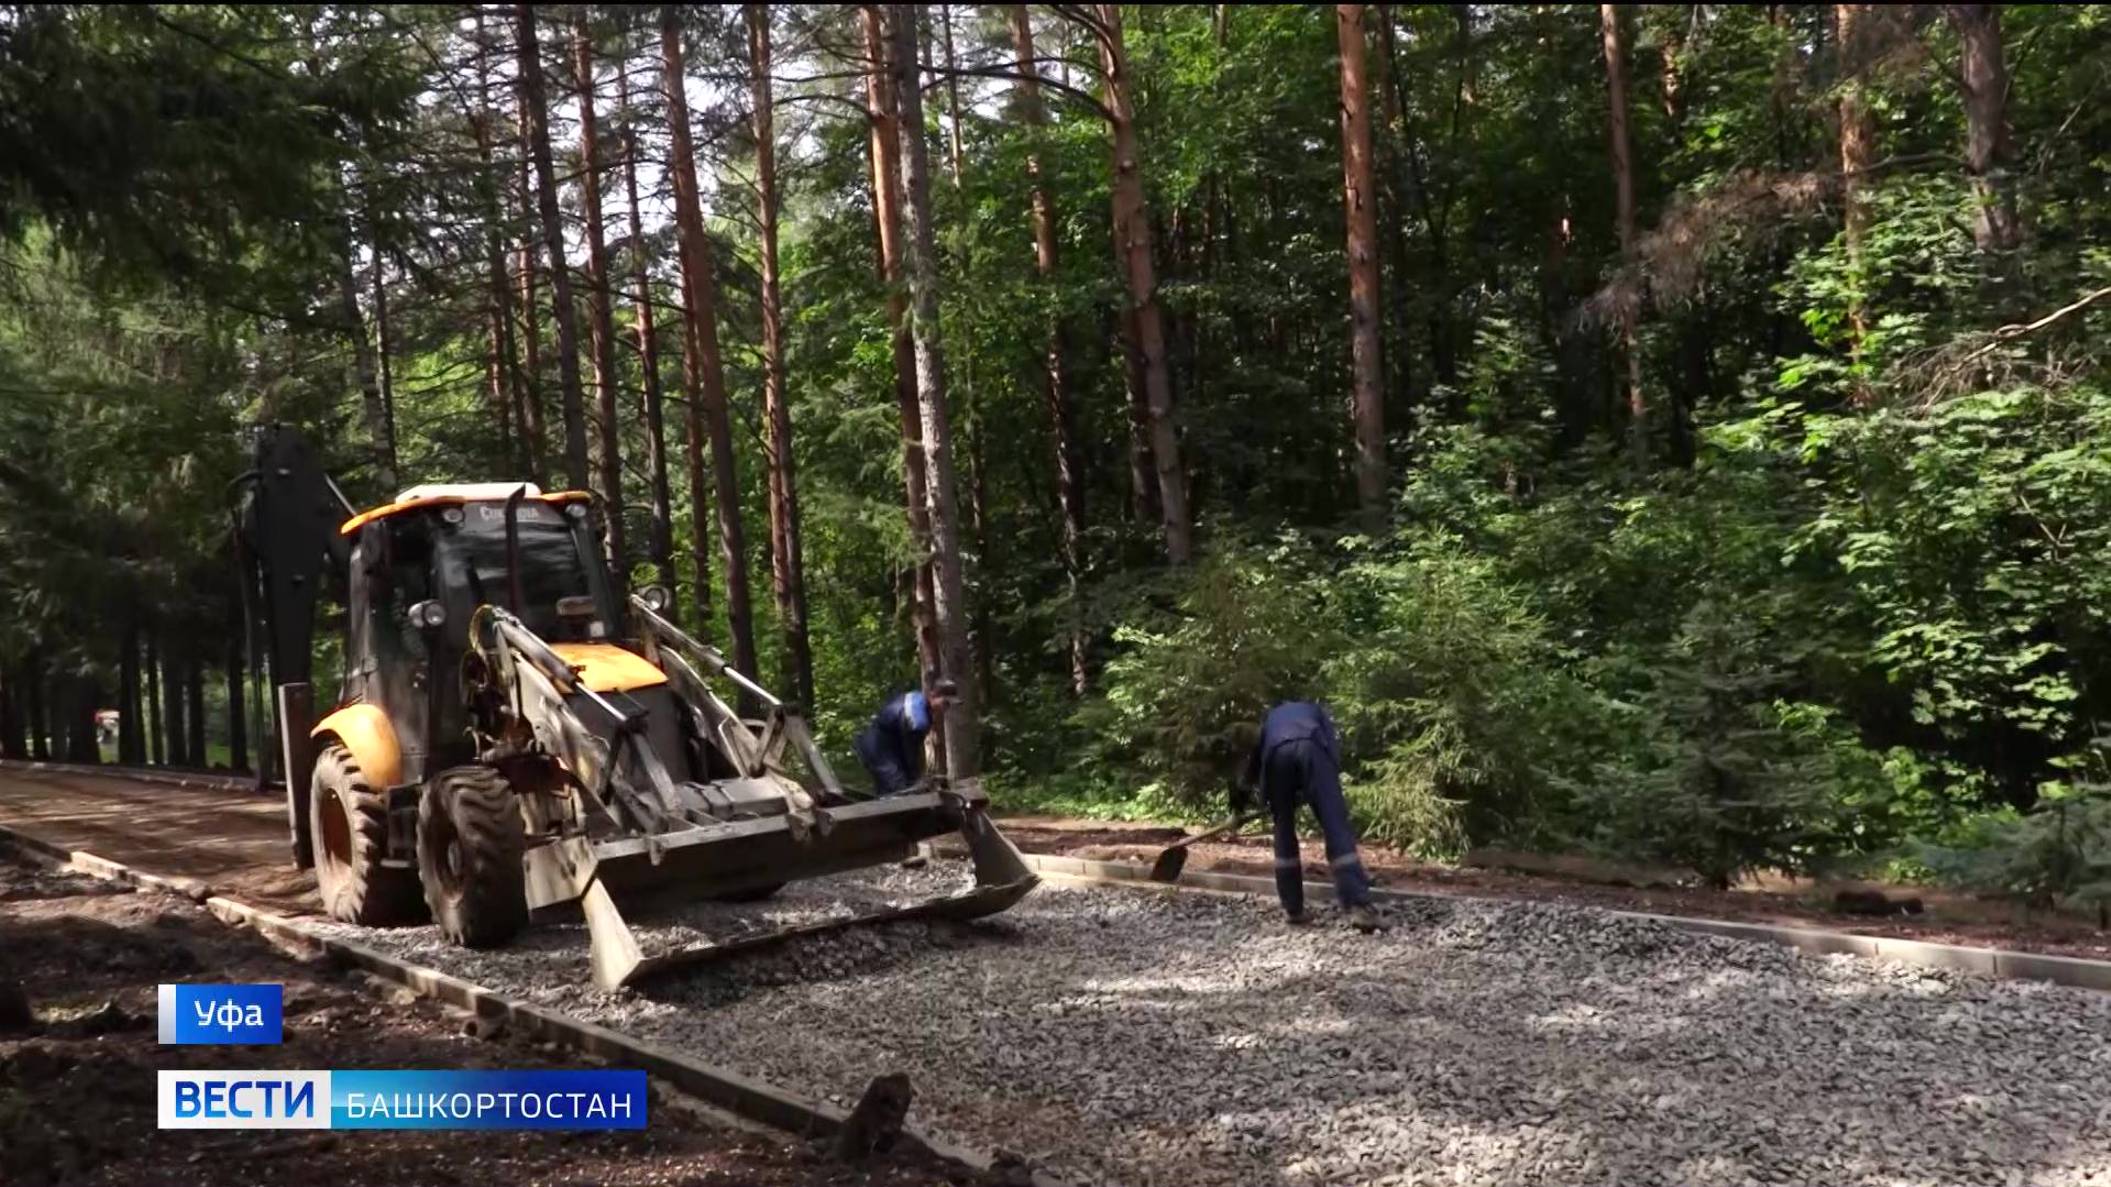 «Вести» узнали, как проходит реконструкция лесопарка имени Лесоводов в Уфе